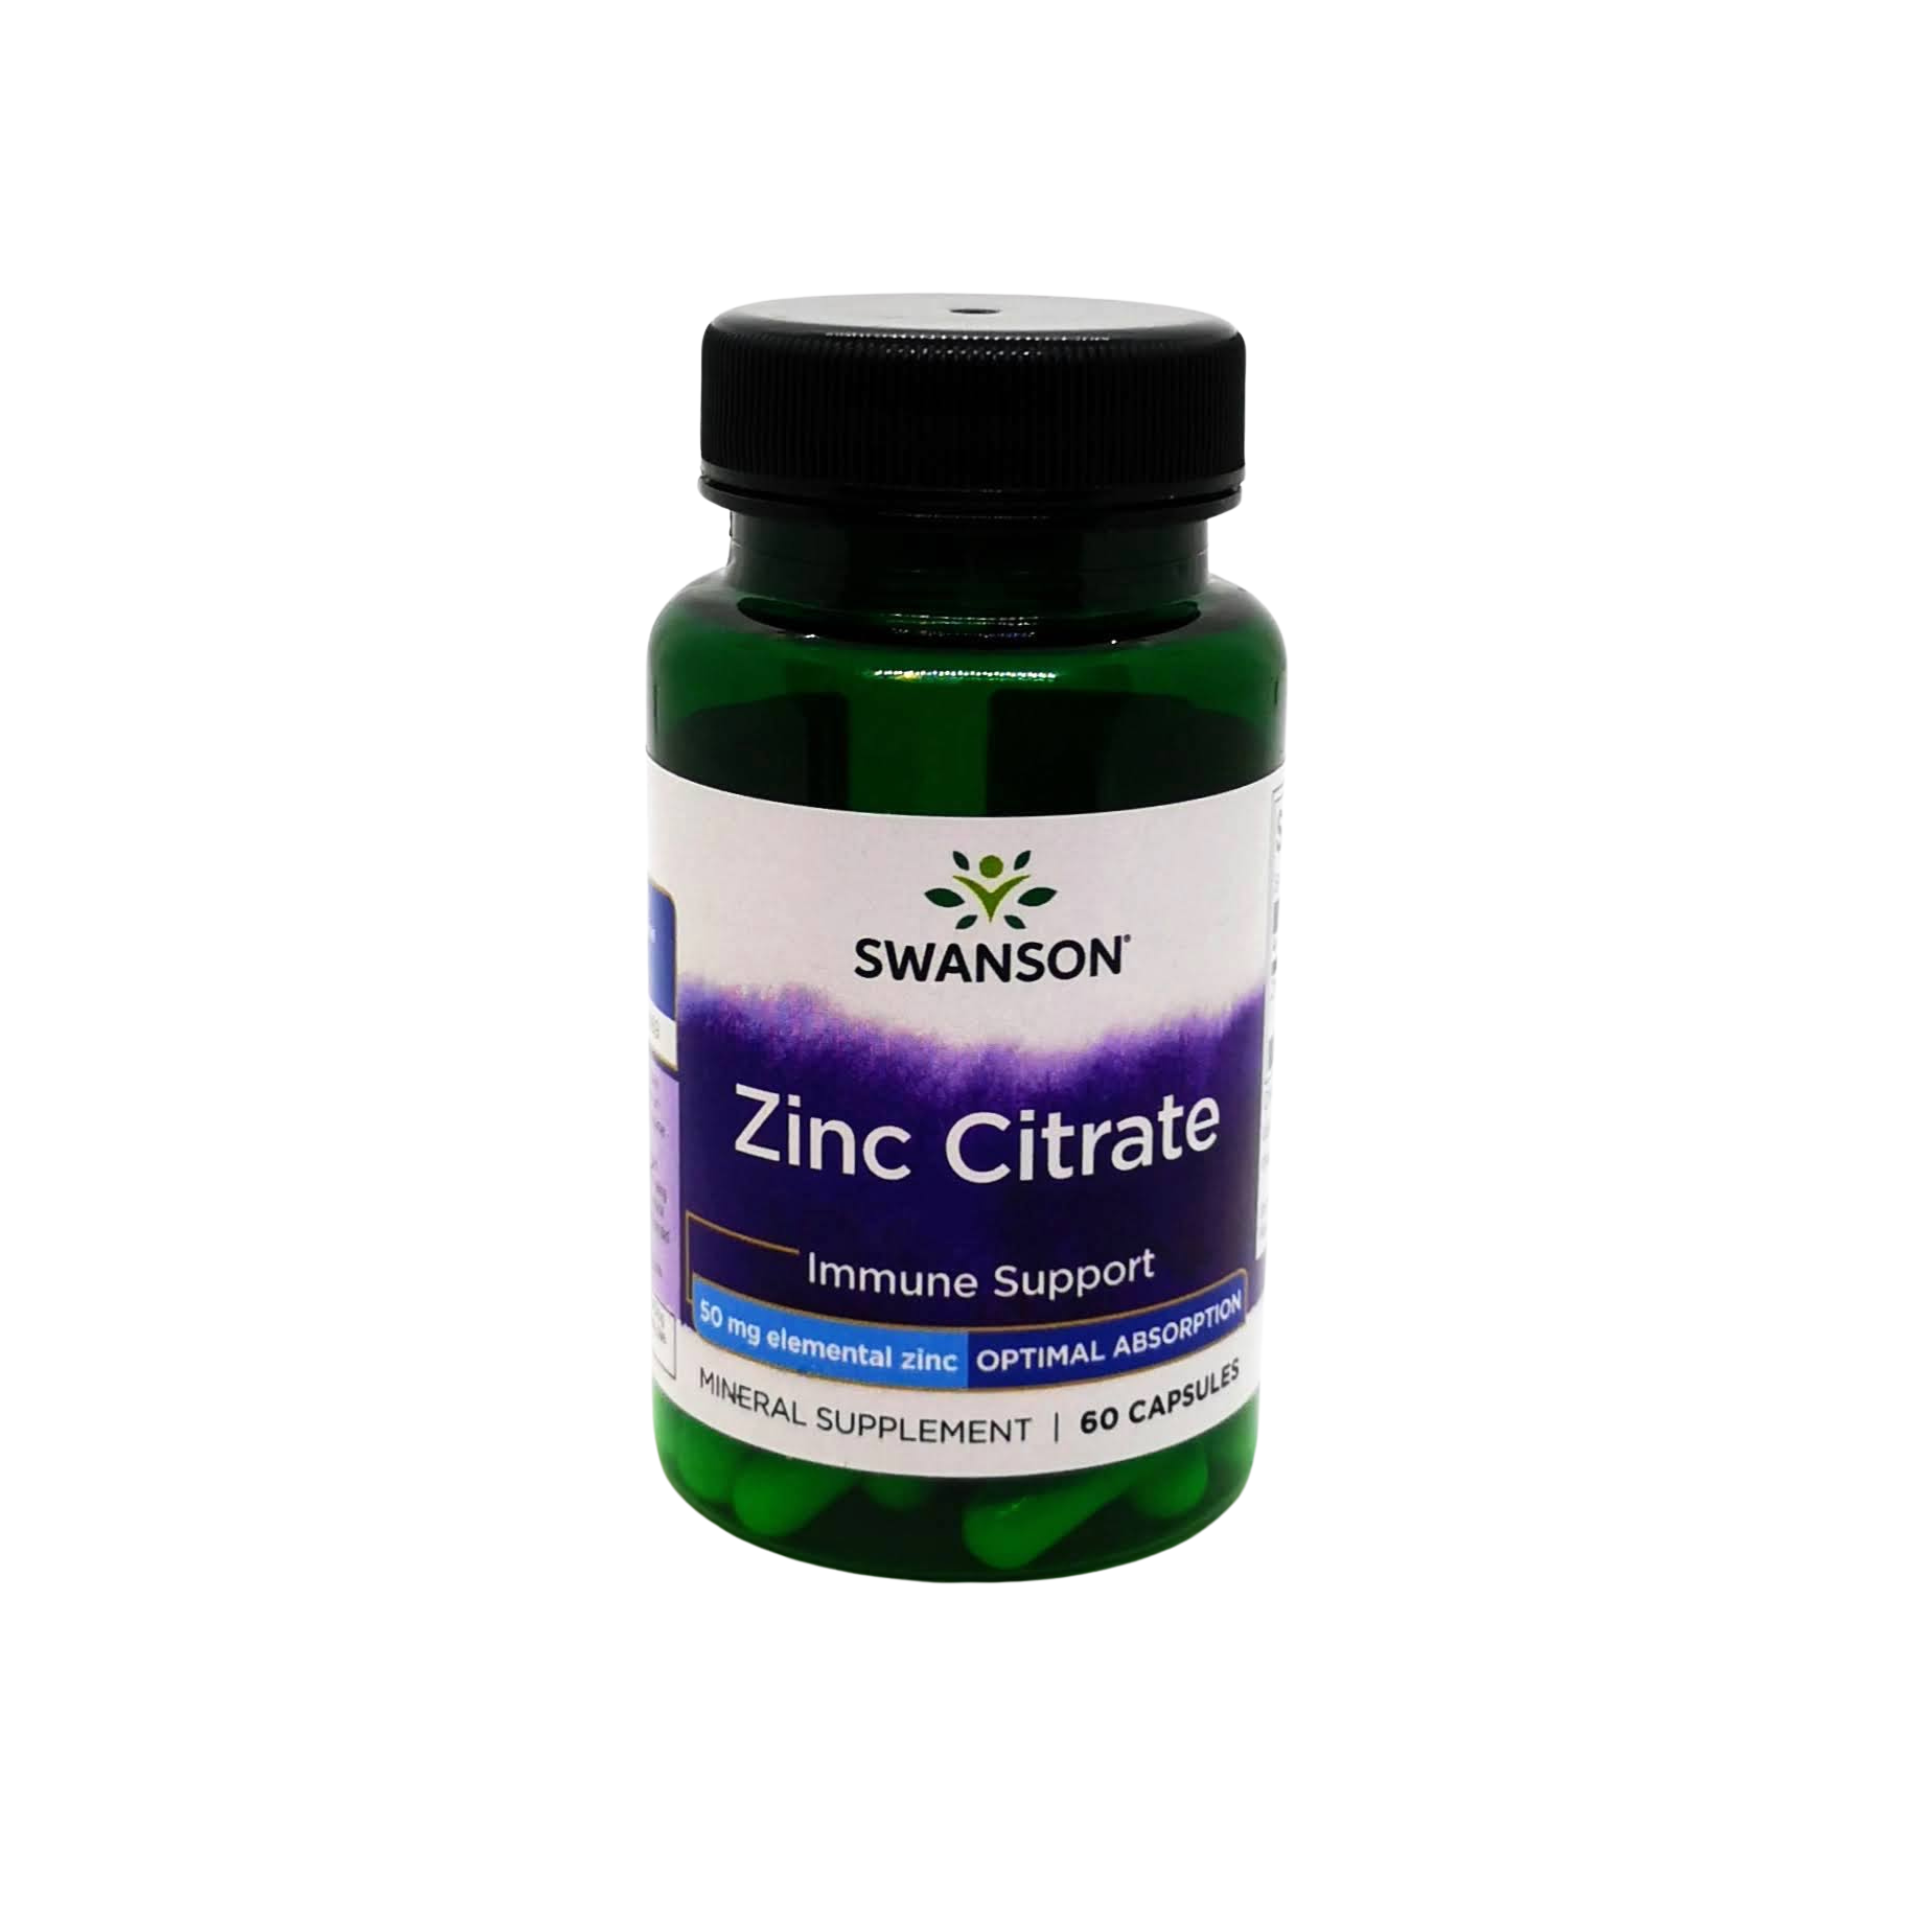 Zinc Citrate Immunsystem Swanson Kopf Darmgesundheit Bewegung Swanson Vitamine Nahrungsergänzungsmittel Zink Kapseln